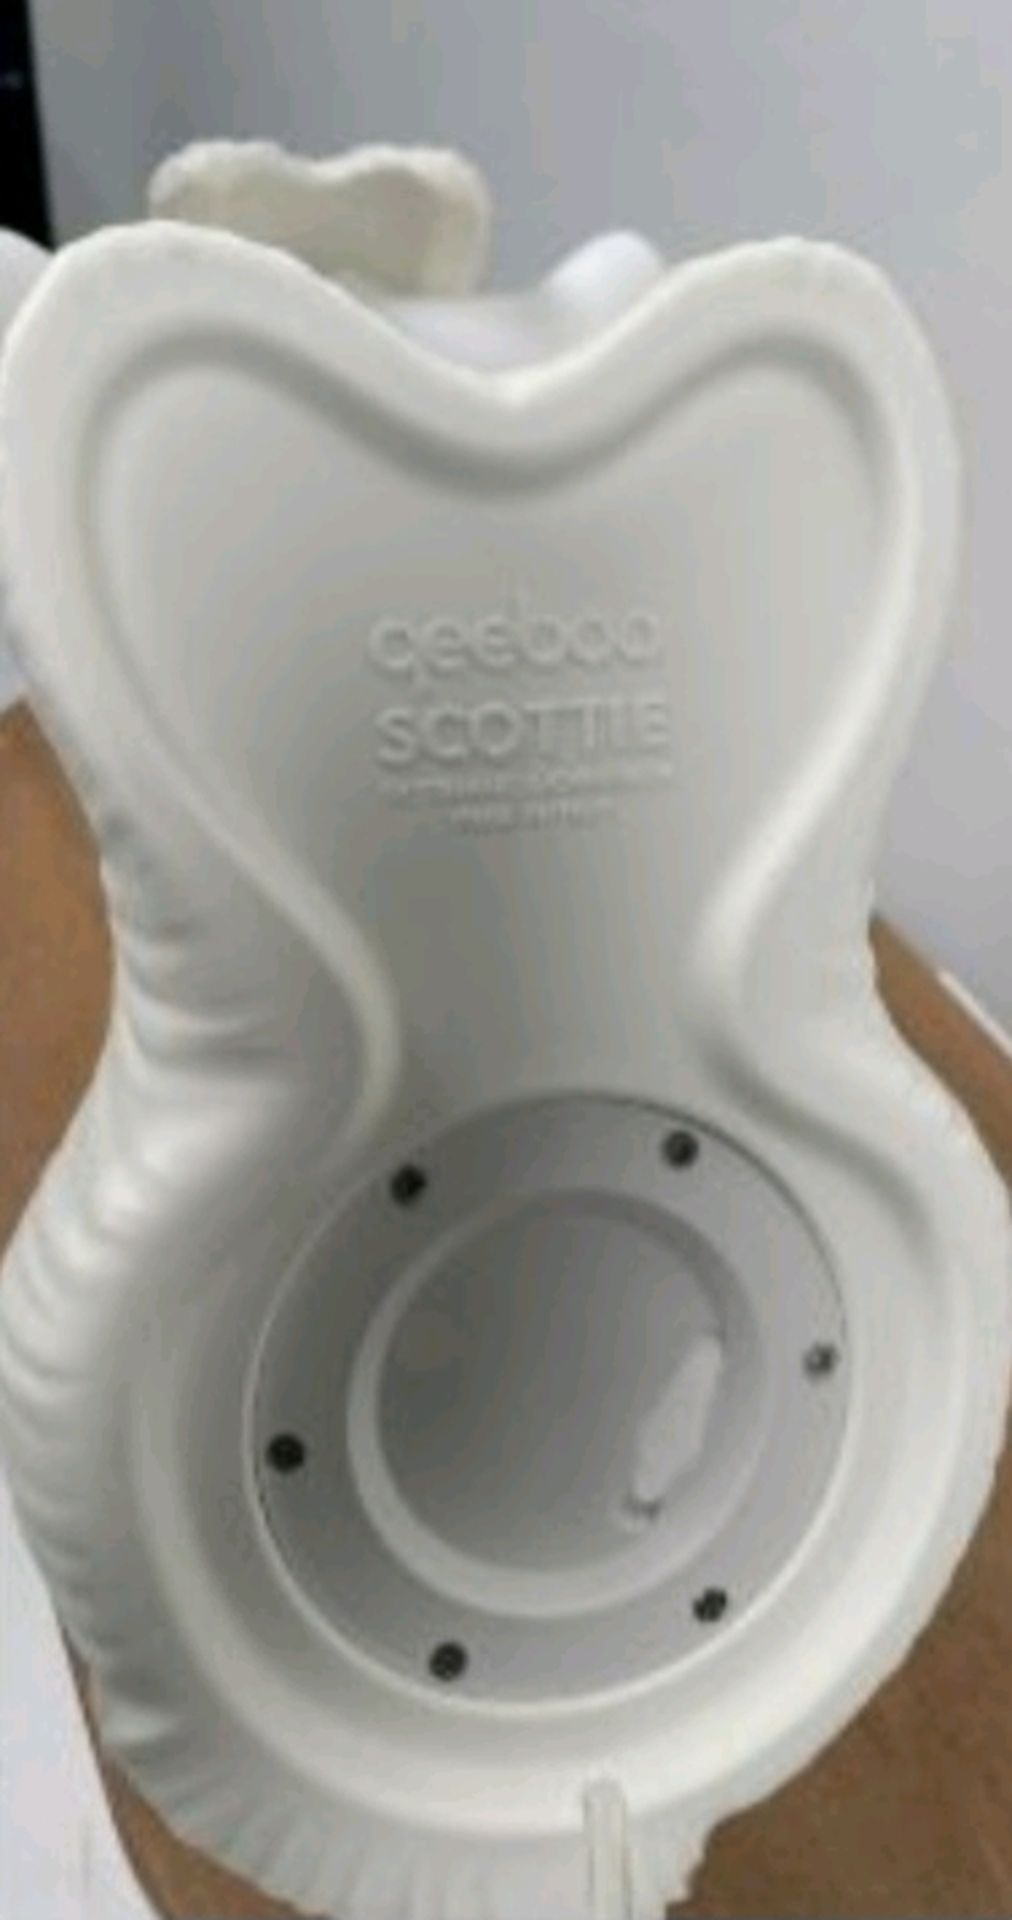 Qeeboo Scottie Floor Lamp - Image 5 of 5